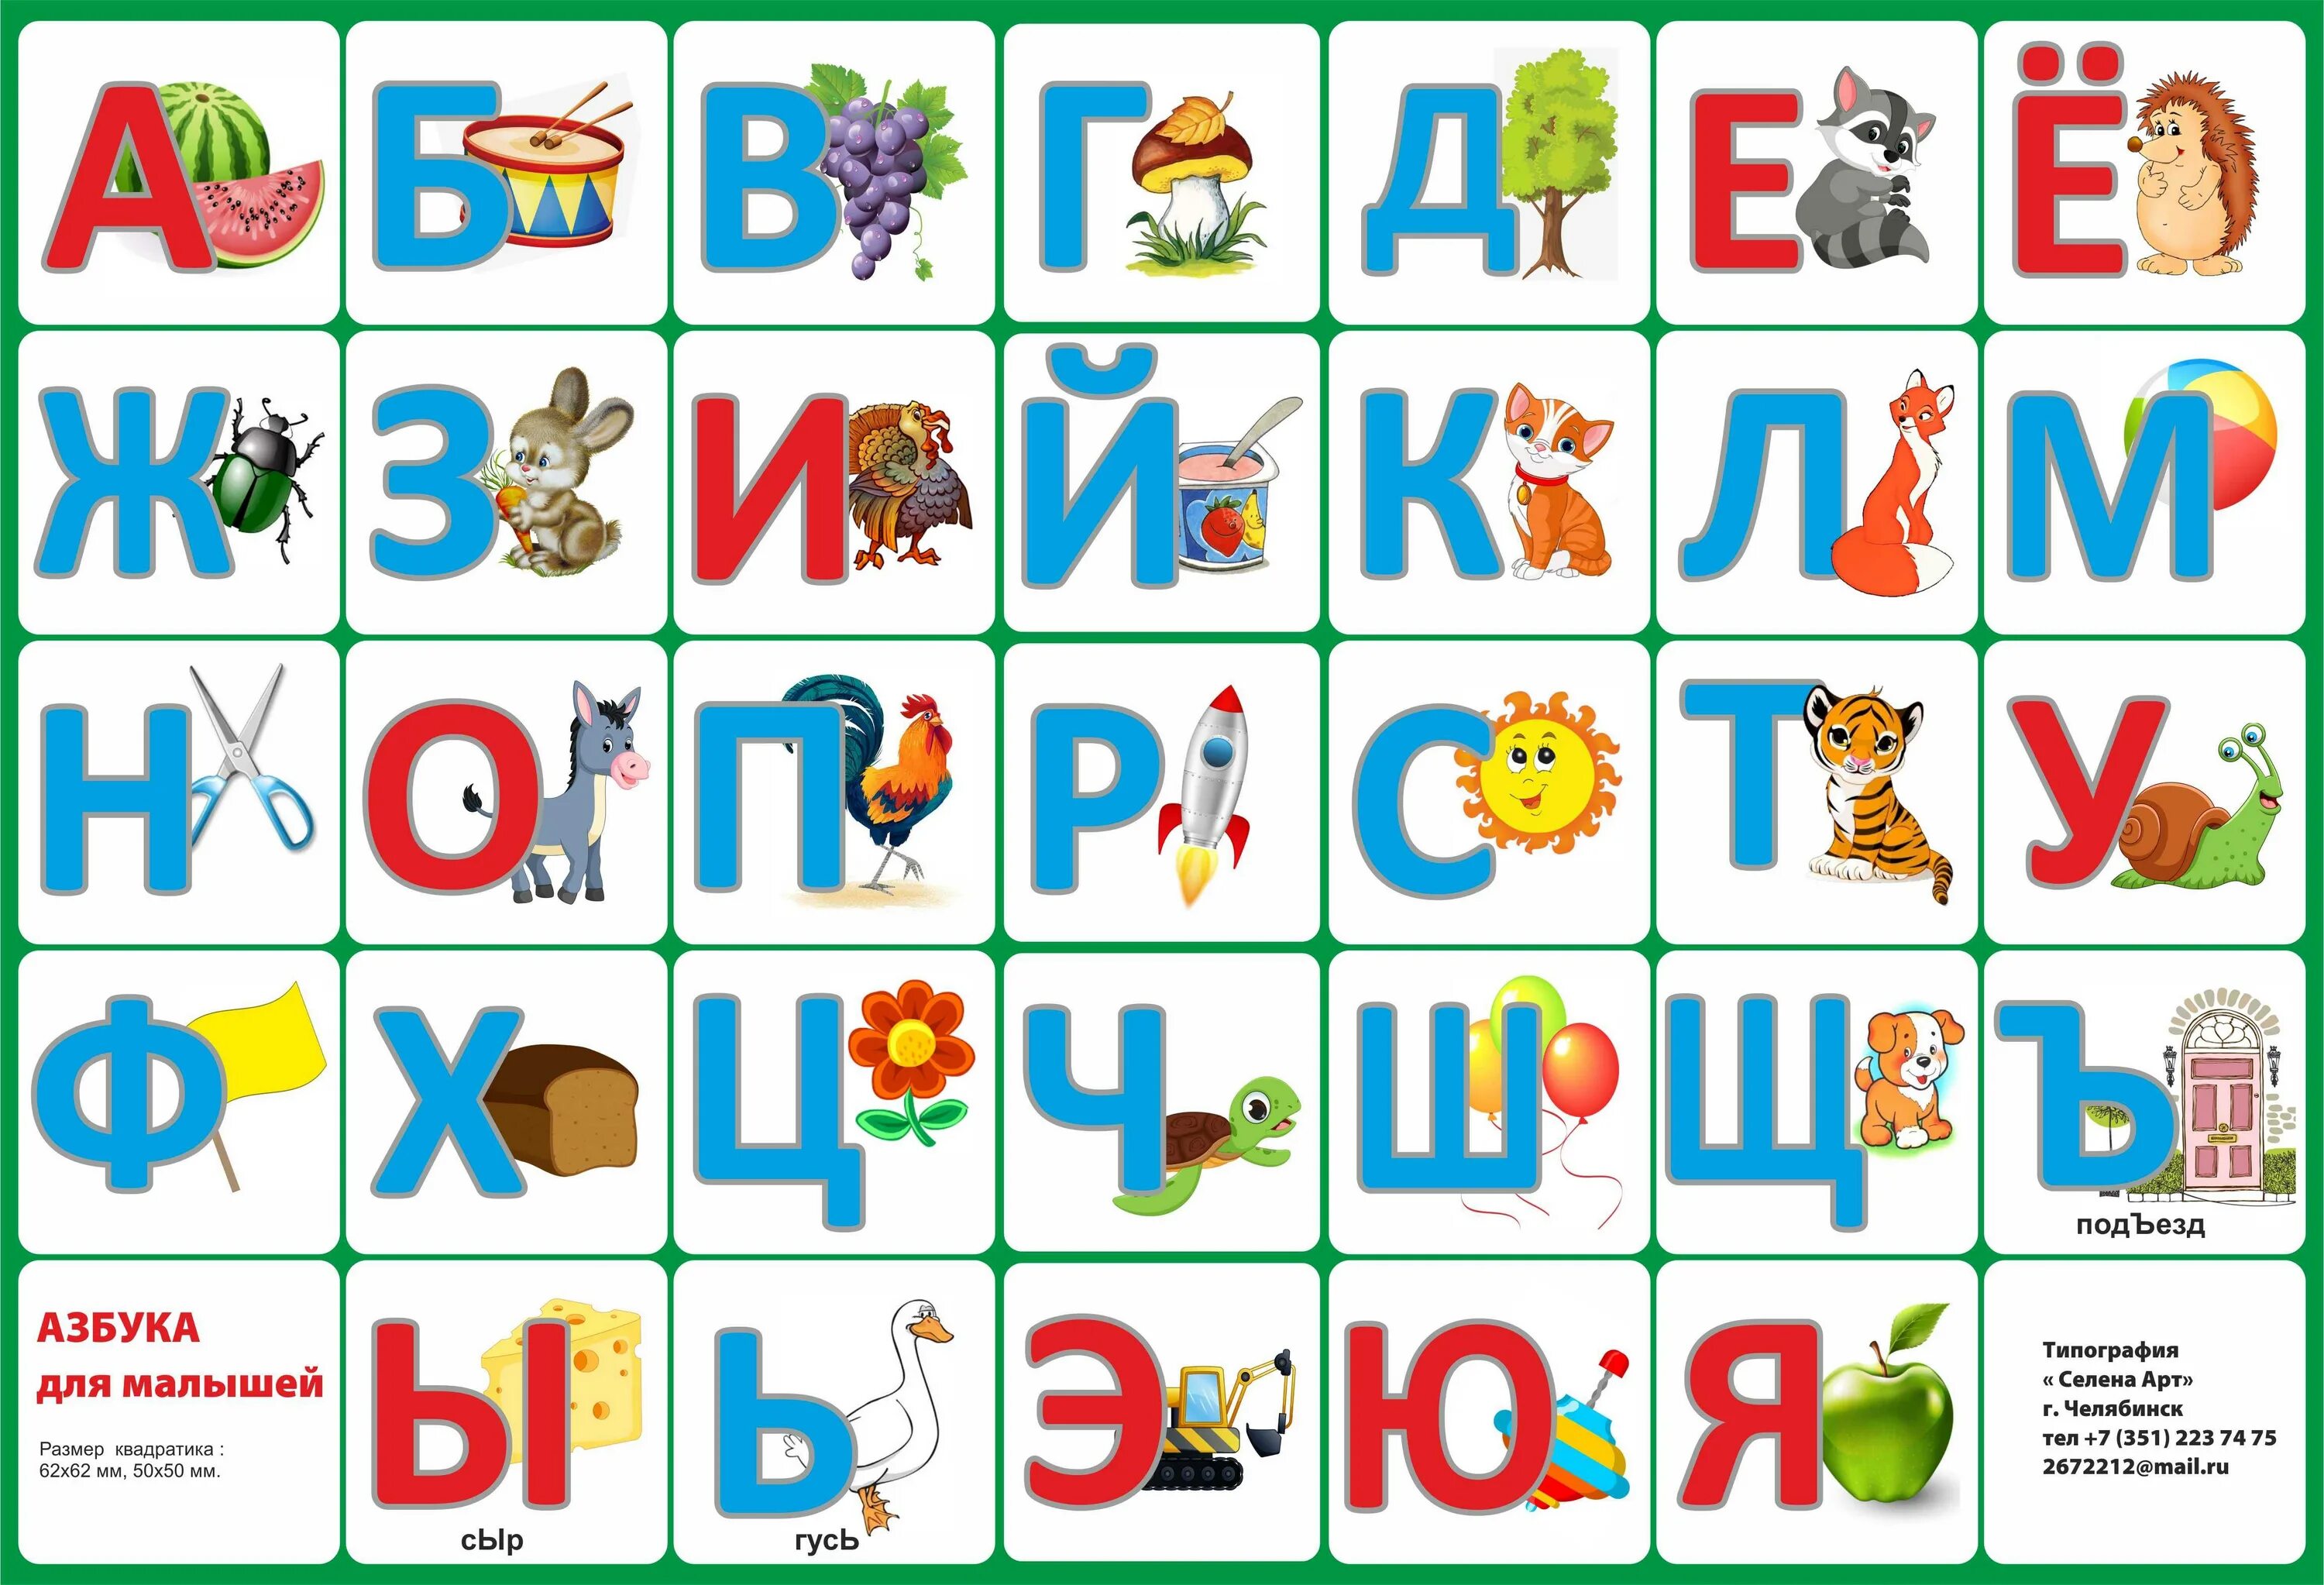 Показать буквы русского алфавита. Азбука. Азбука в картинках. Буквы алфавита для детей. Азбука картинка для детей.